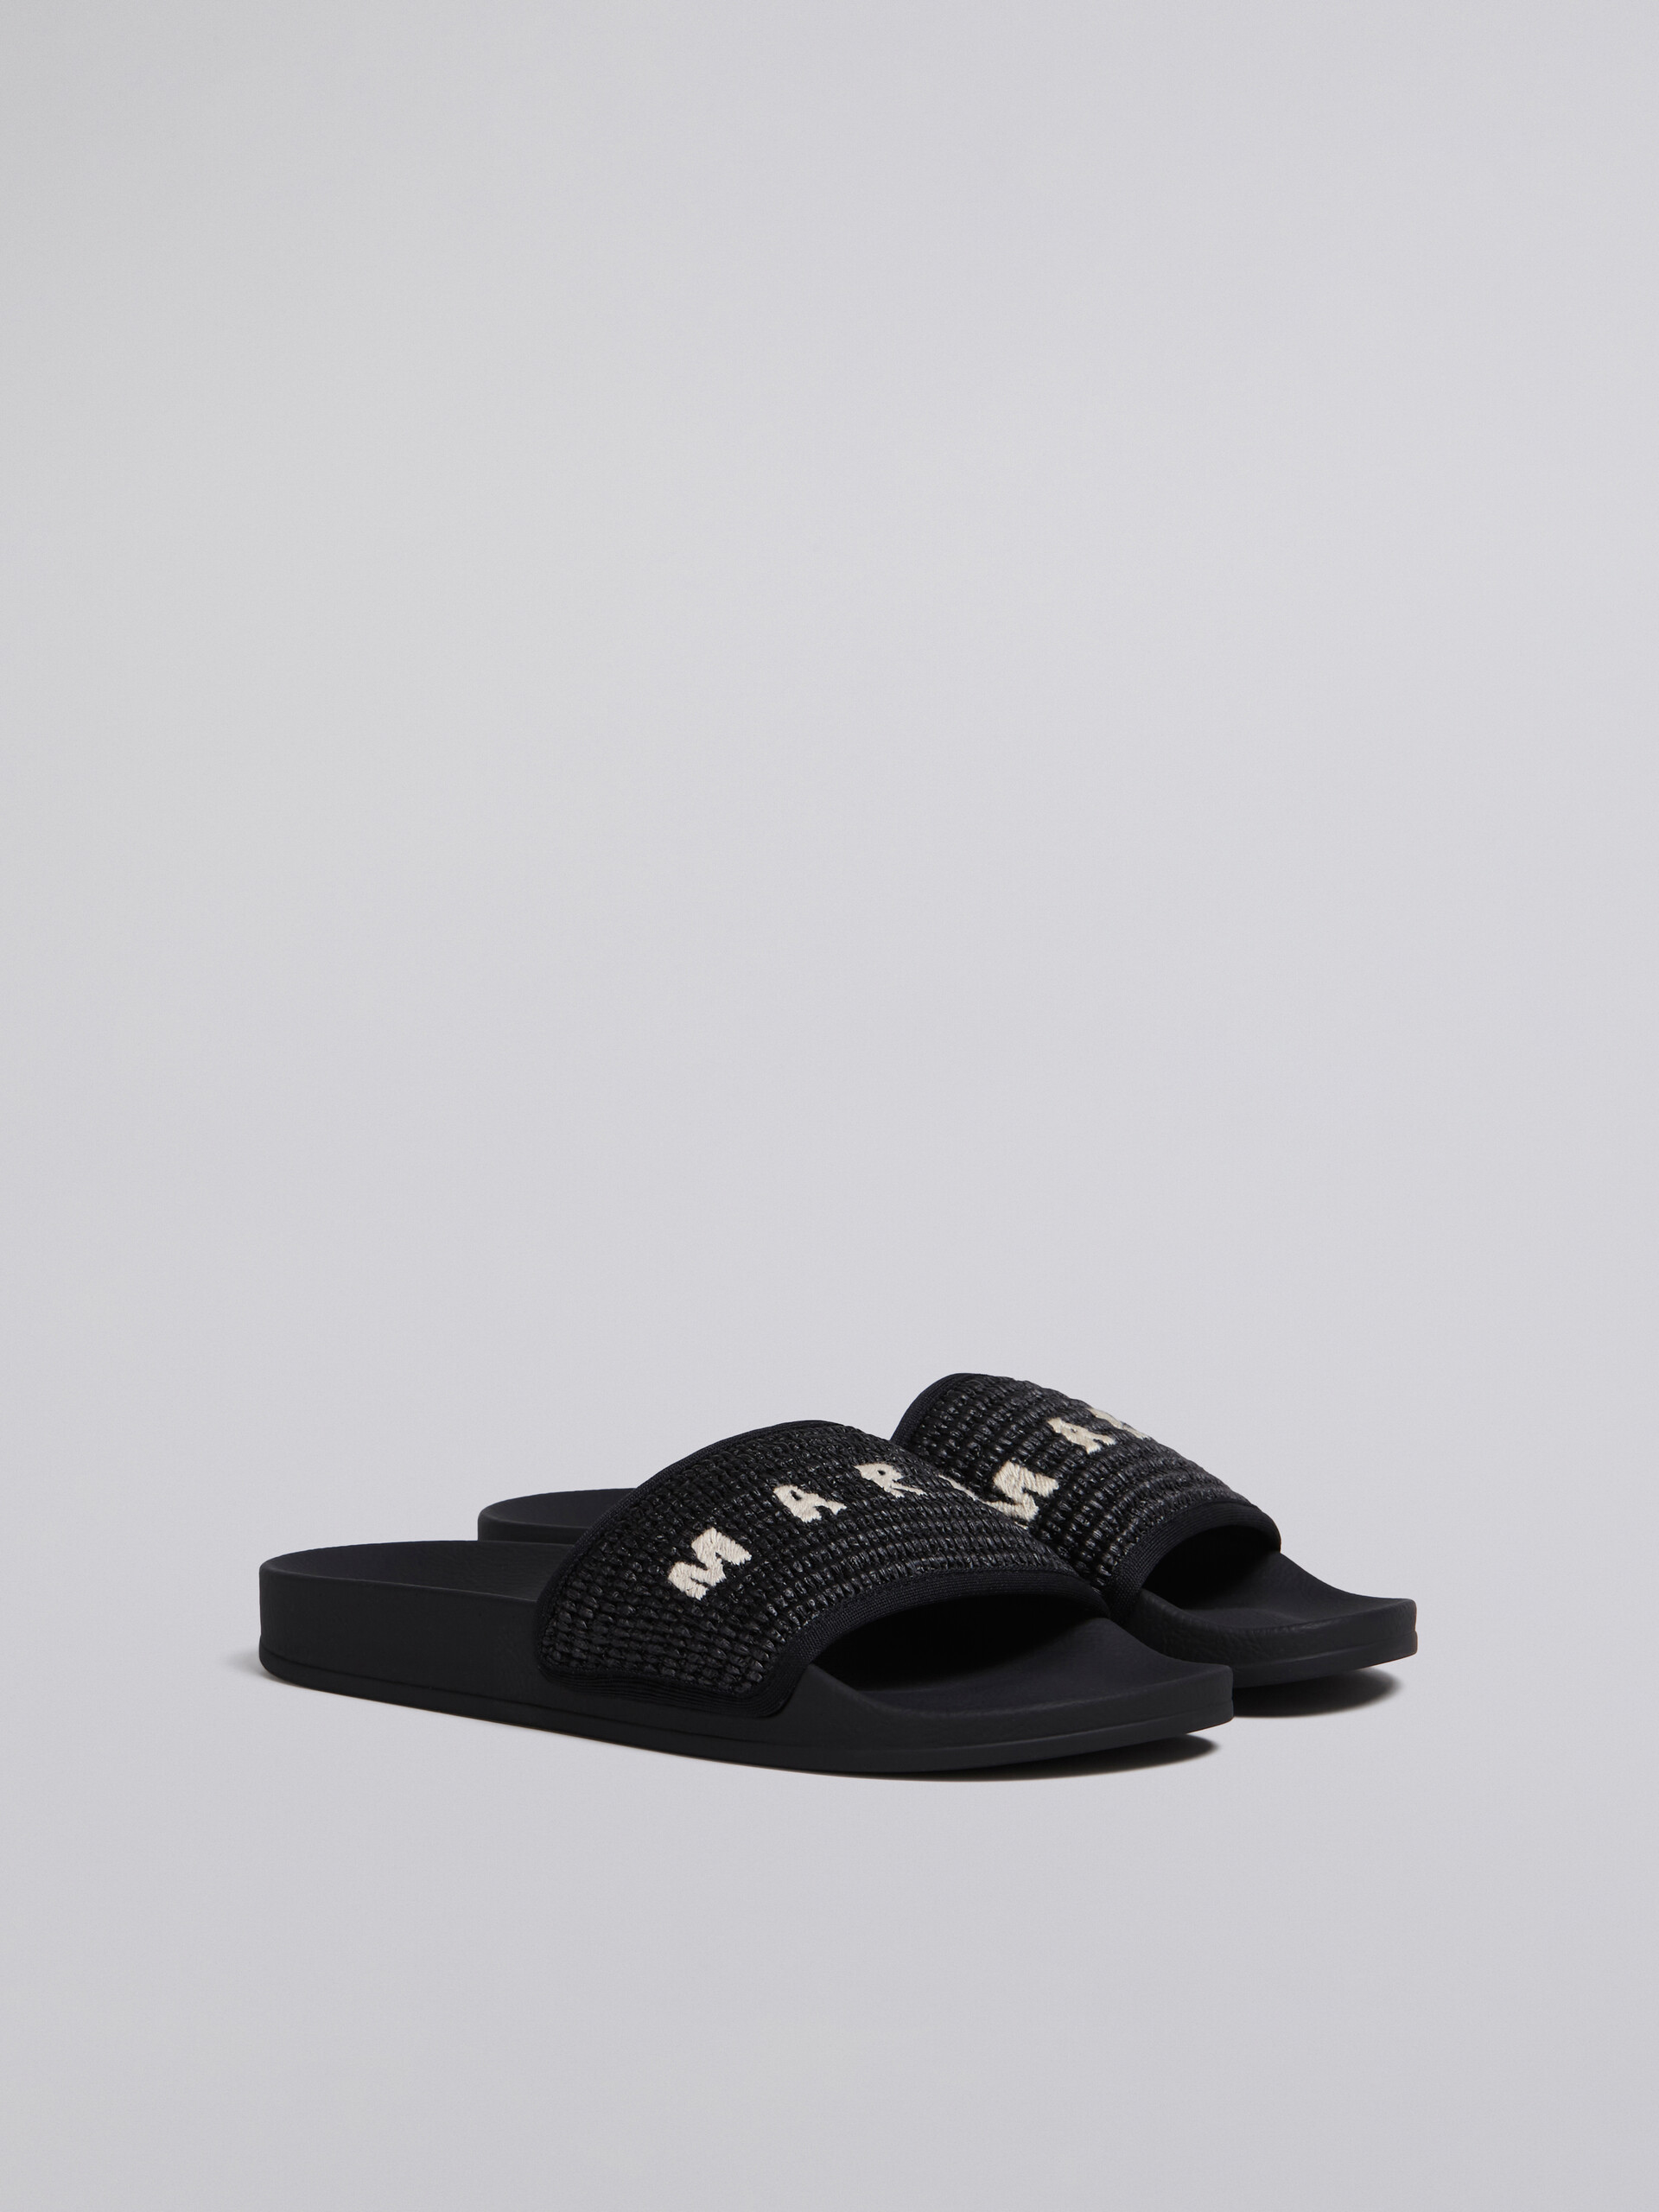 블랙 라피아 샌들 - Sandals - Image 2